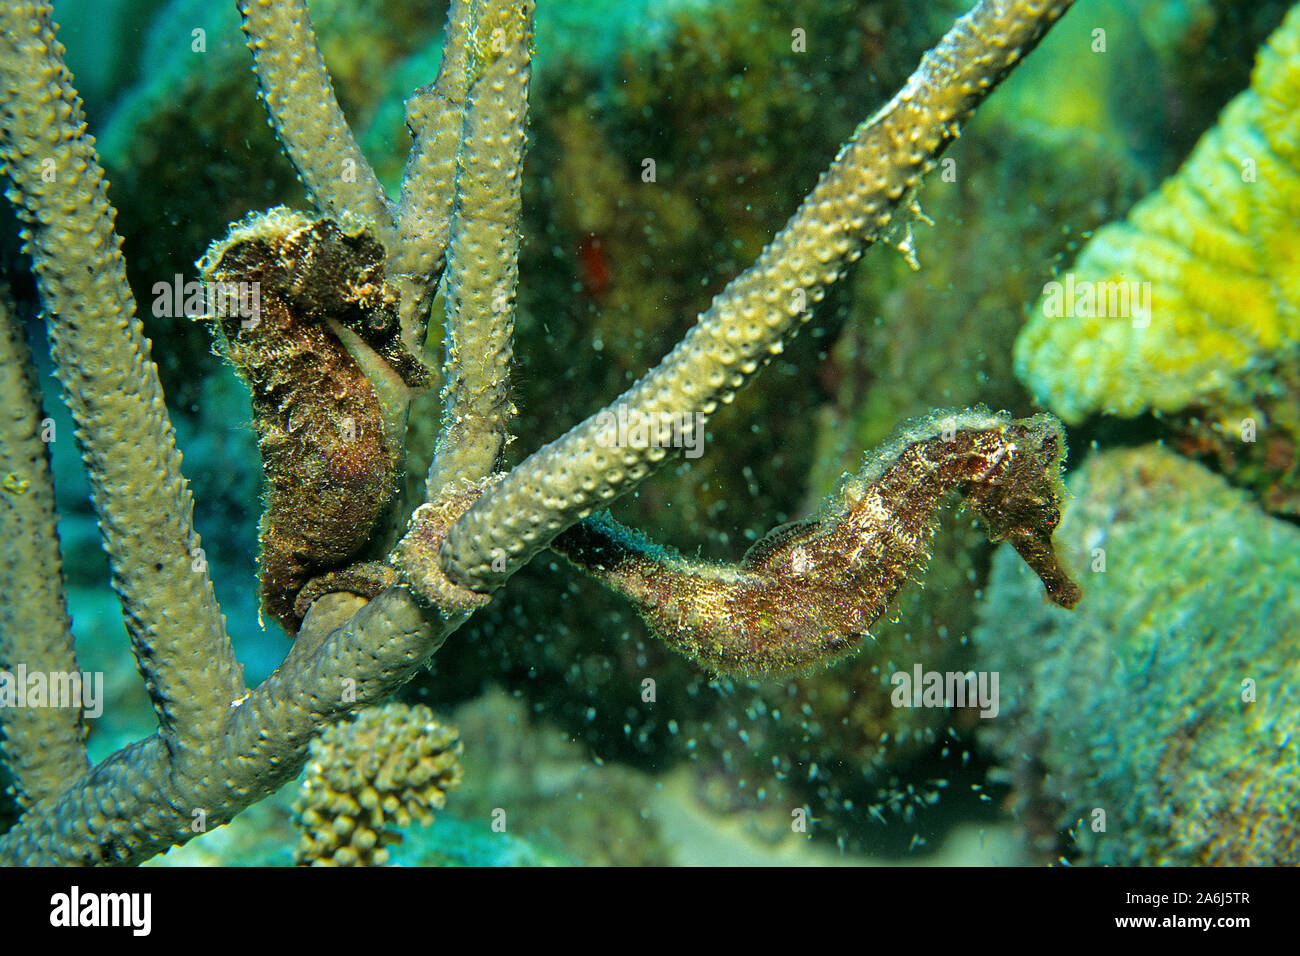 Le Seahorse (Hippocampus reidi) maintenant sur le corail, Bonaire, Antilles néerlandaises, Caraïbes Banque D'Images